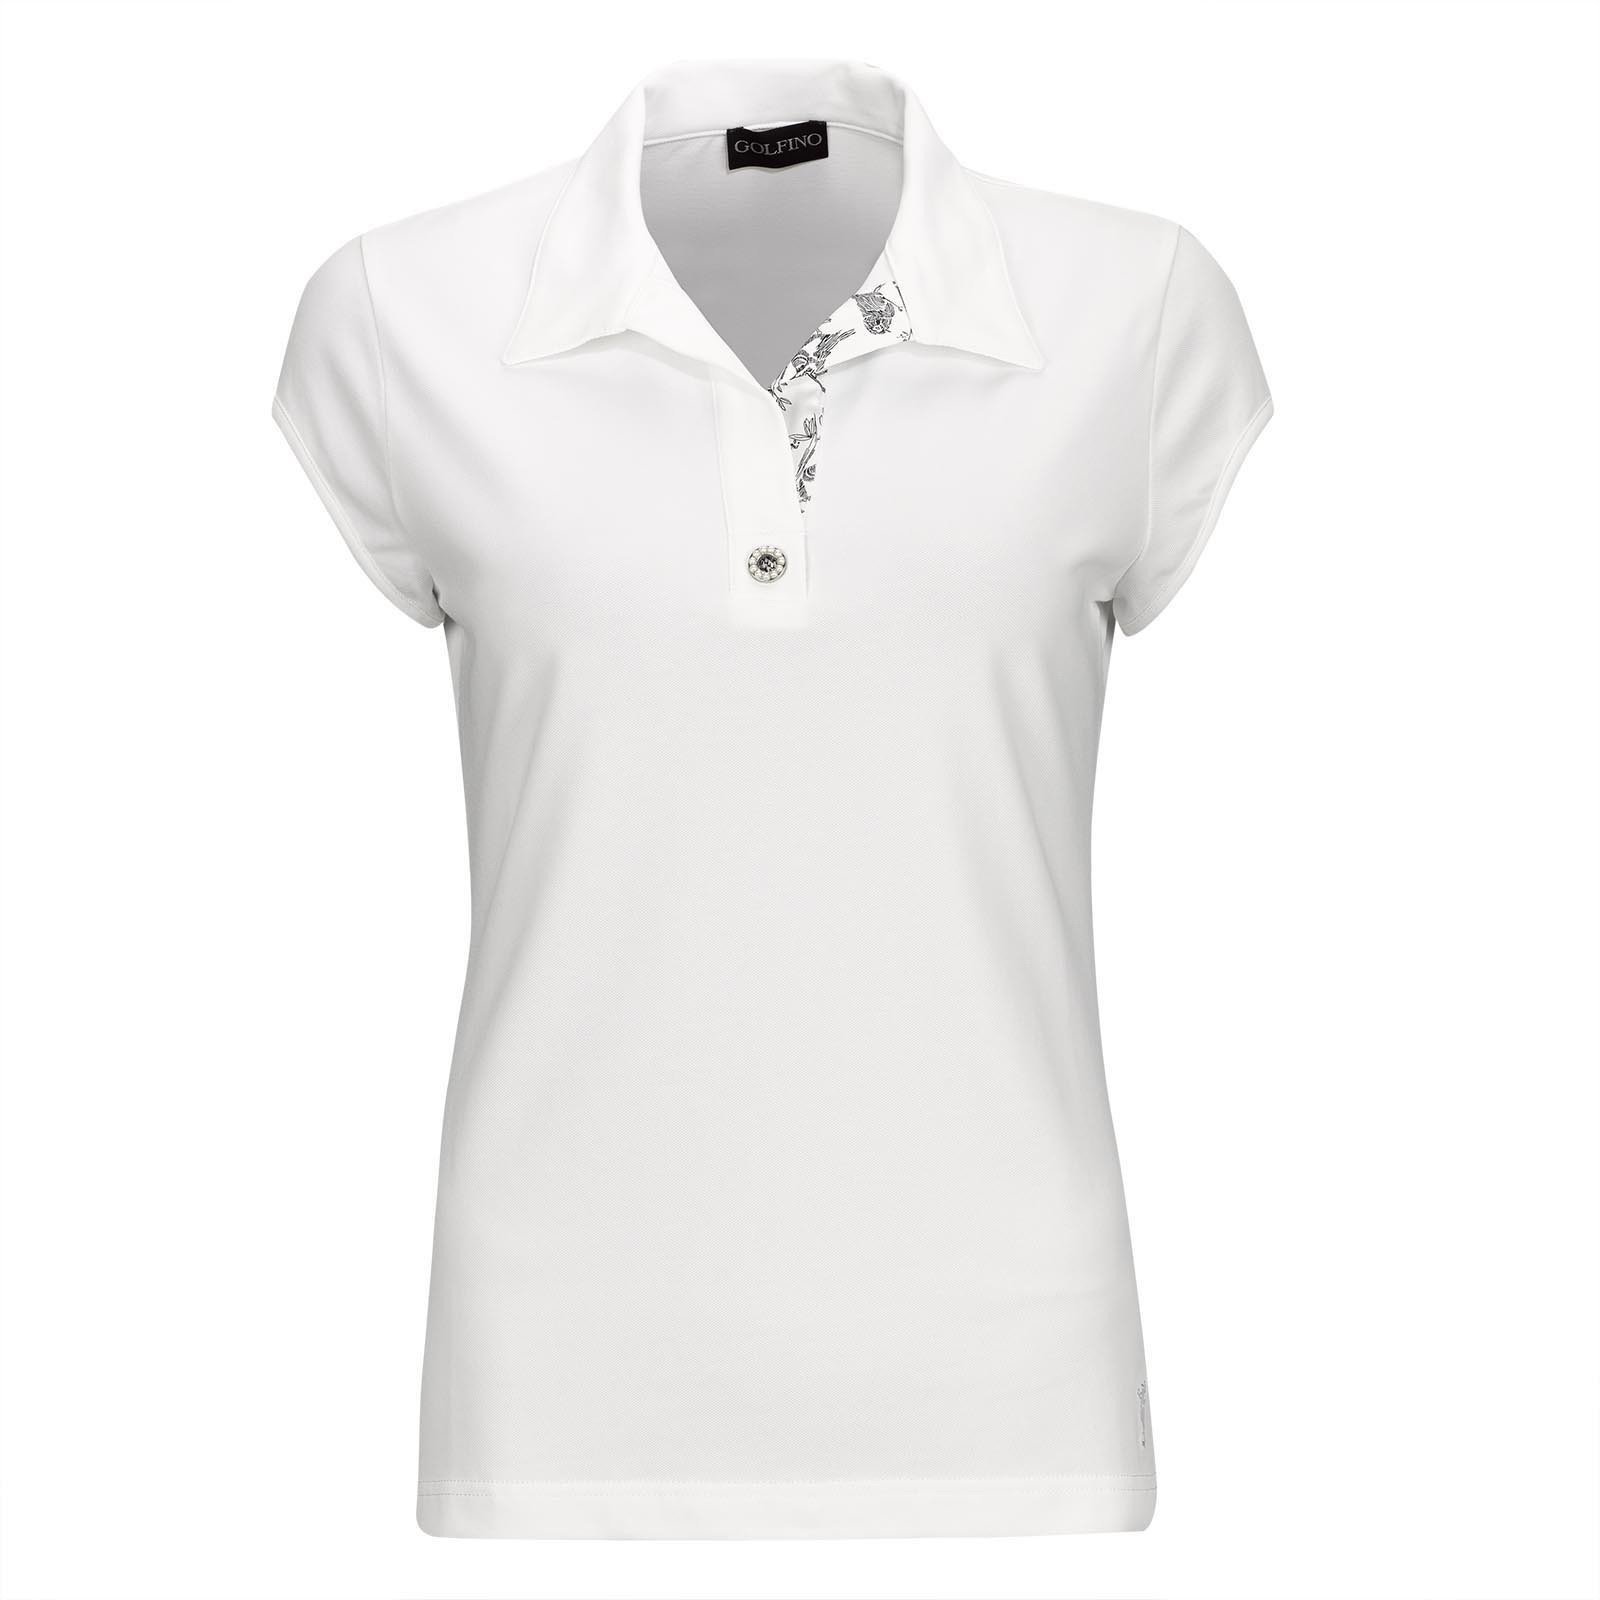 Πουκάμισα Πόλο Golfino Pearls Cap Sleeve Womens Polo Shirt White 34